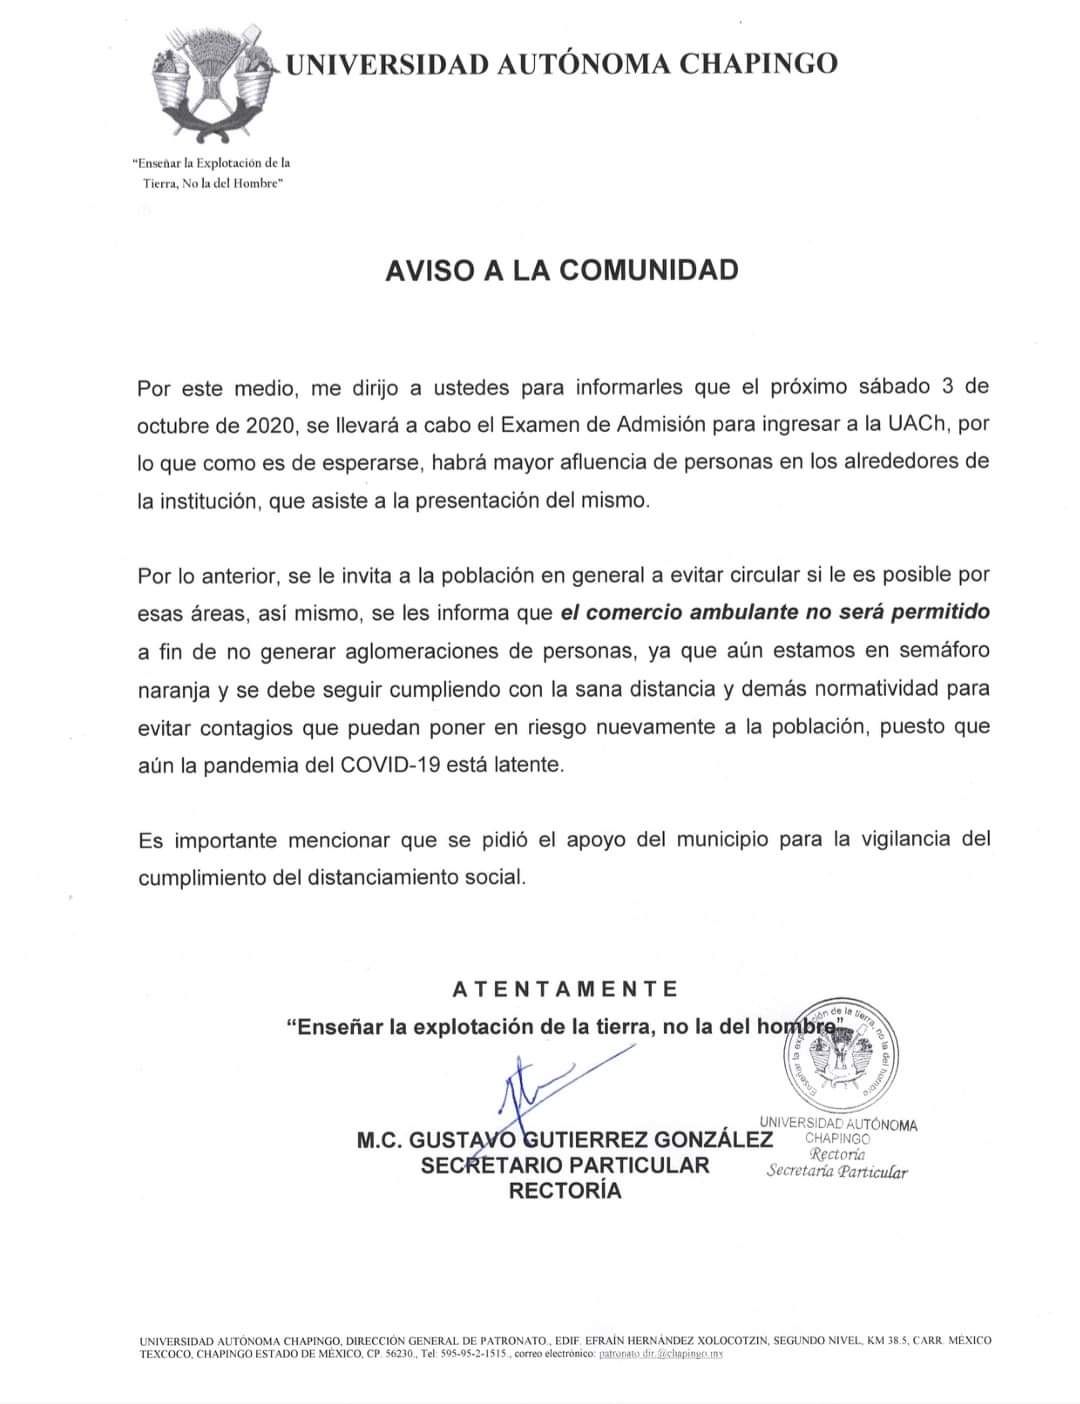 Comunicado oficial de la Universidad Autónoma Chapingo en relación a la presentación del examen de admisión